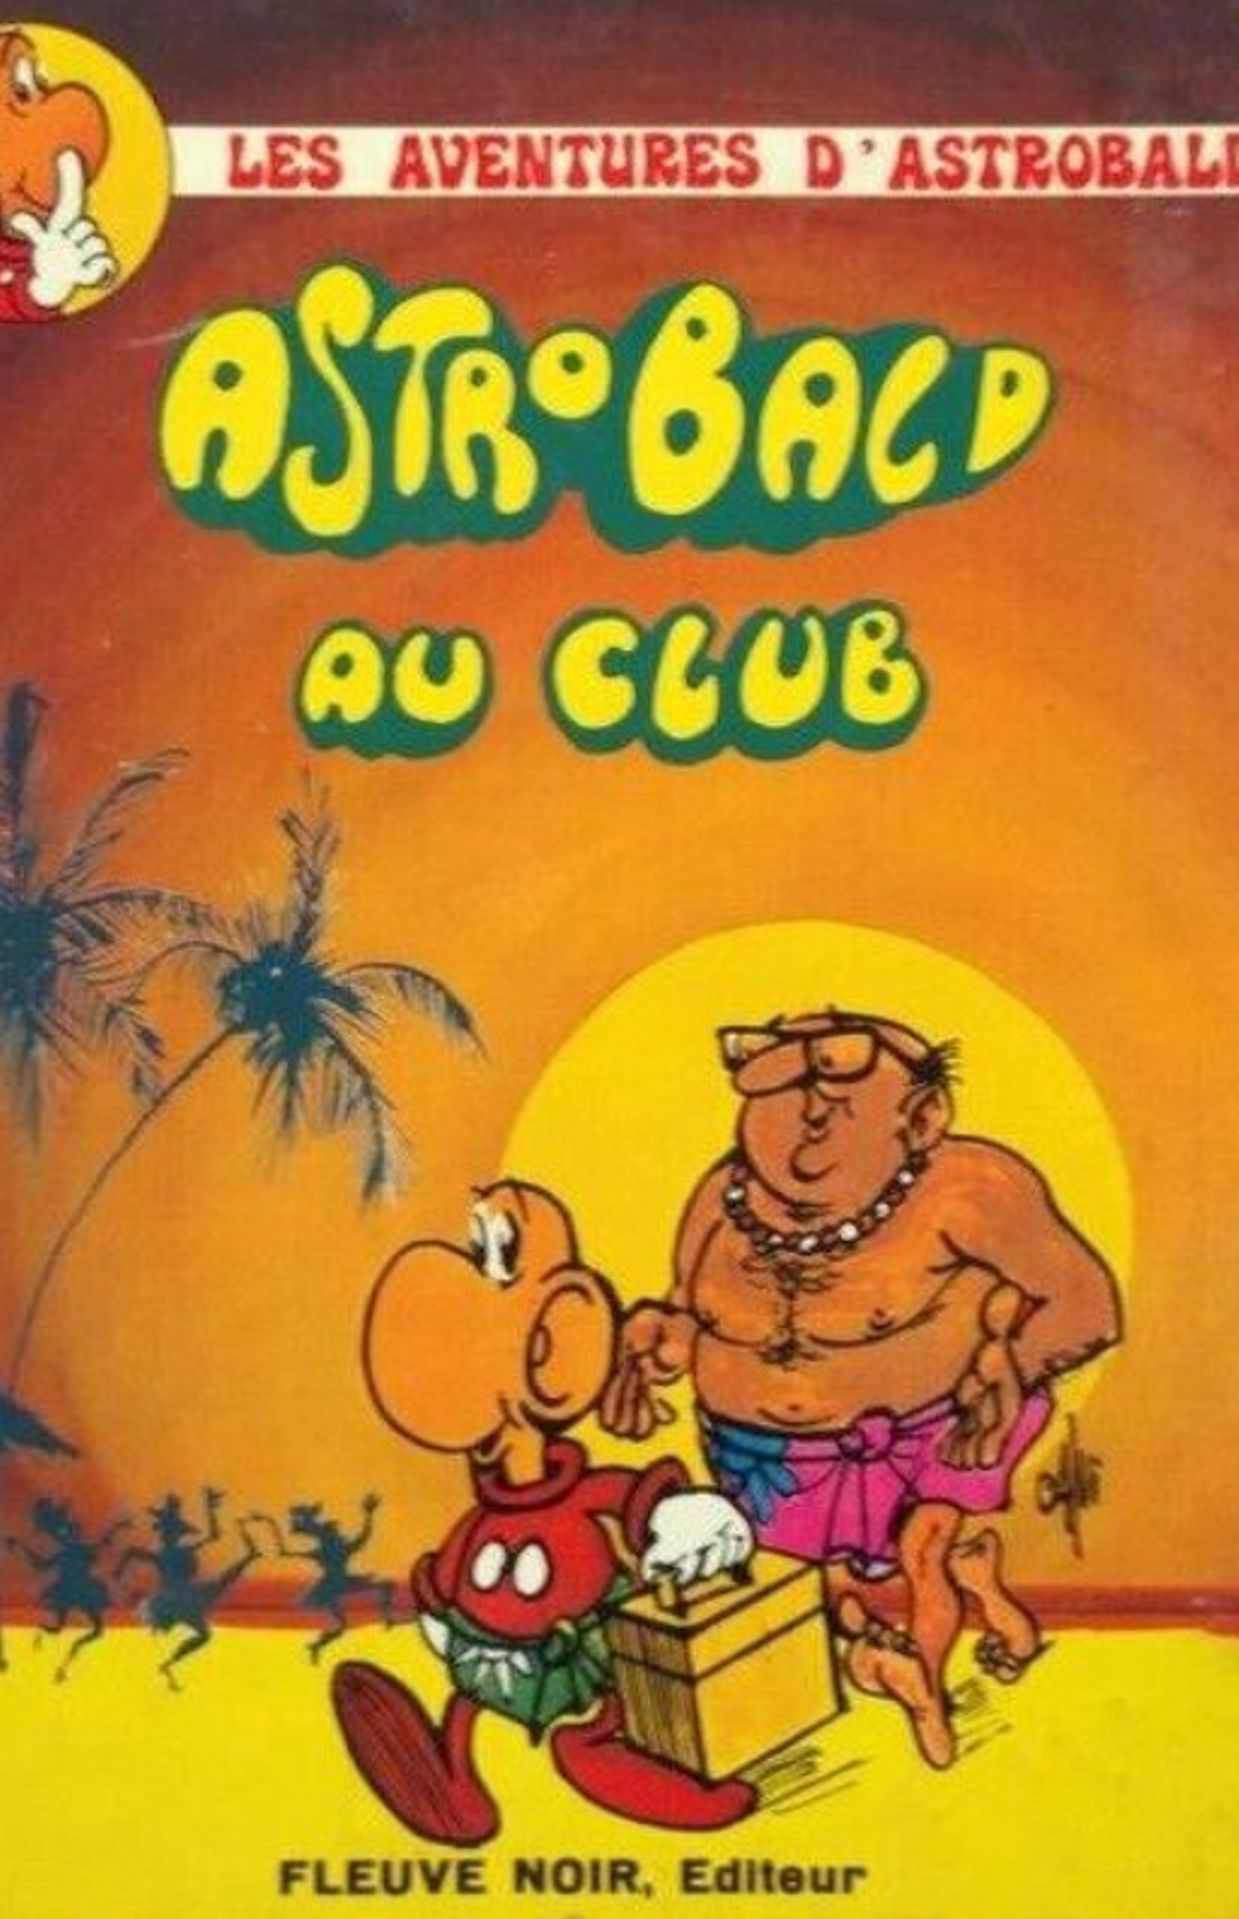 Couverture de la bande dessinée "Les aventures d'Astrobald – Astrobald au club"